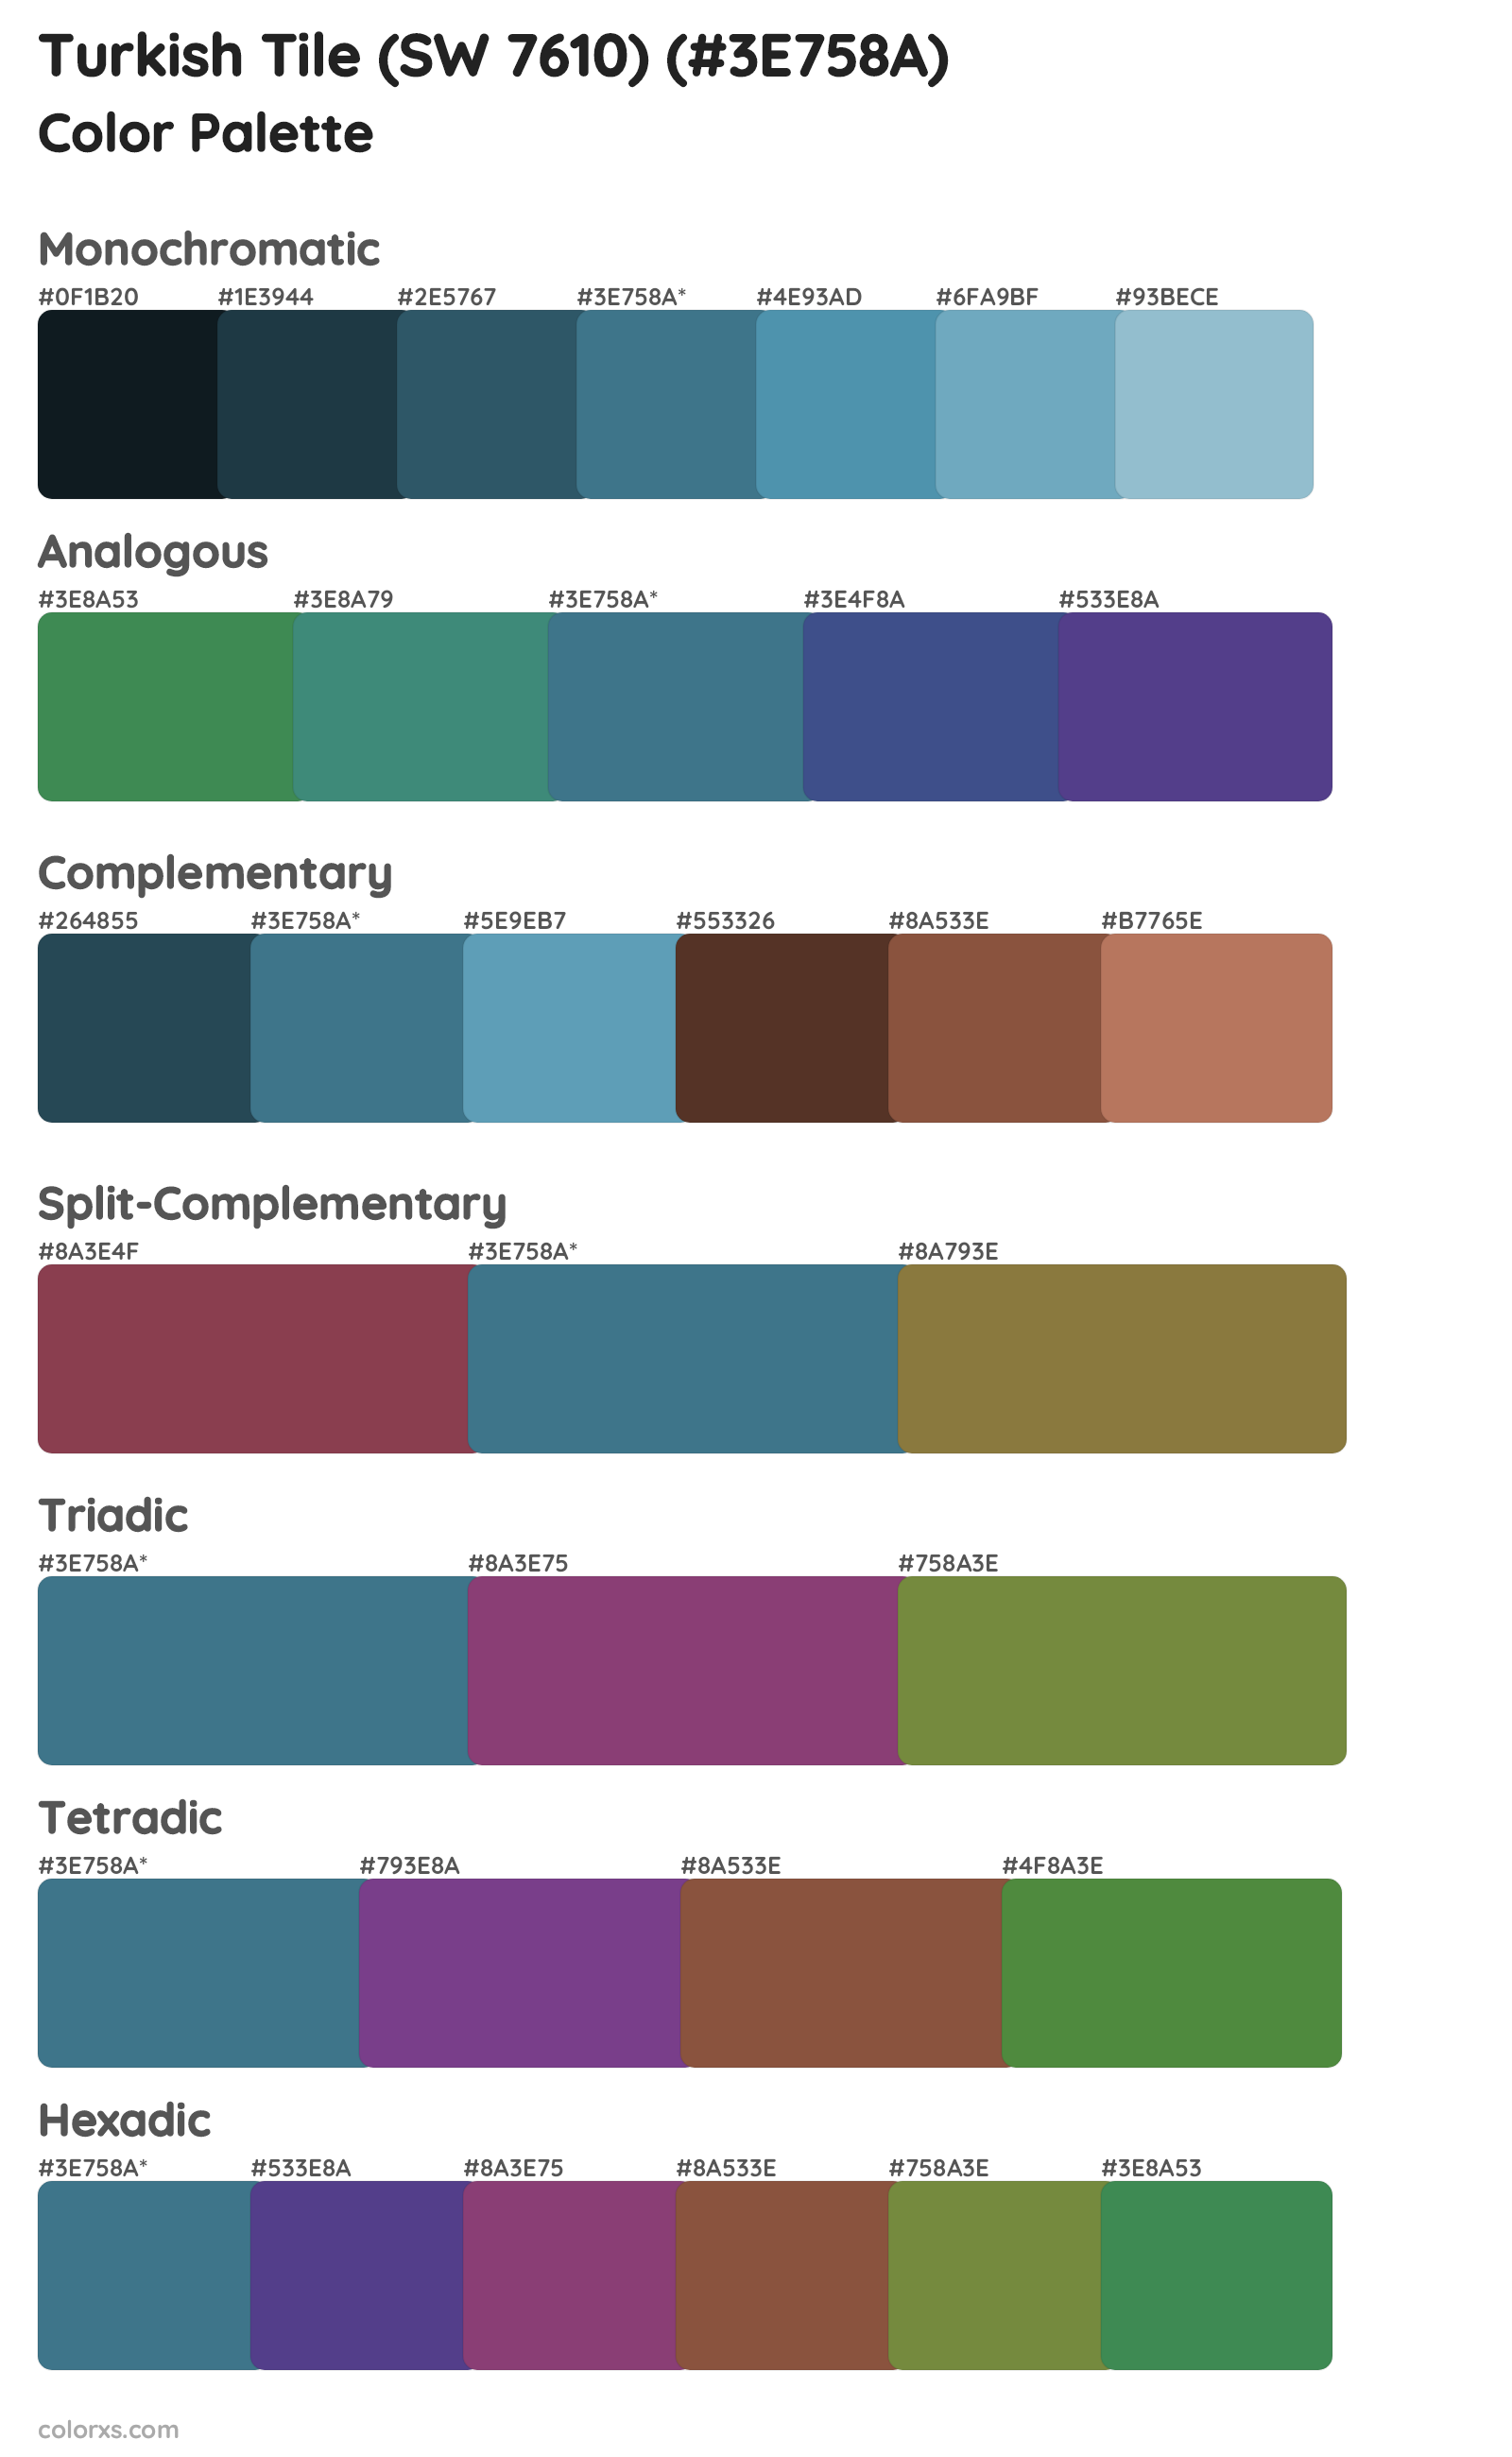 Turkish Tile (SW 7610) Color Scheme Palettes